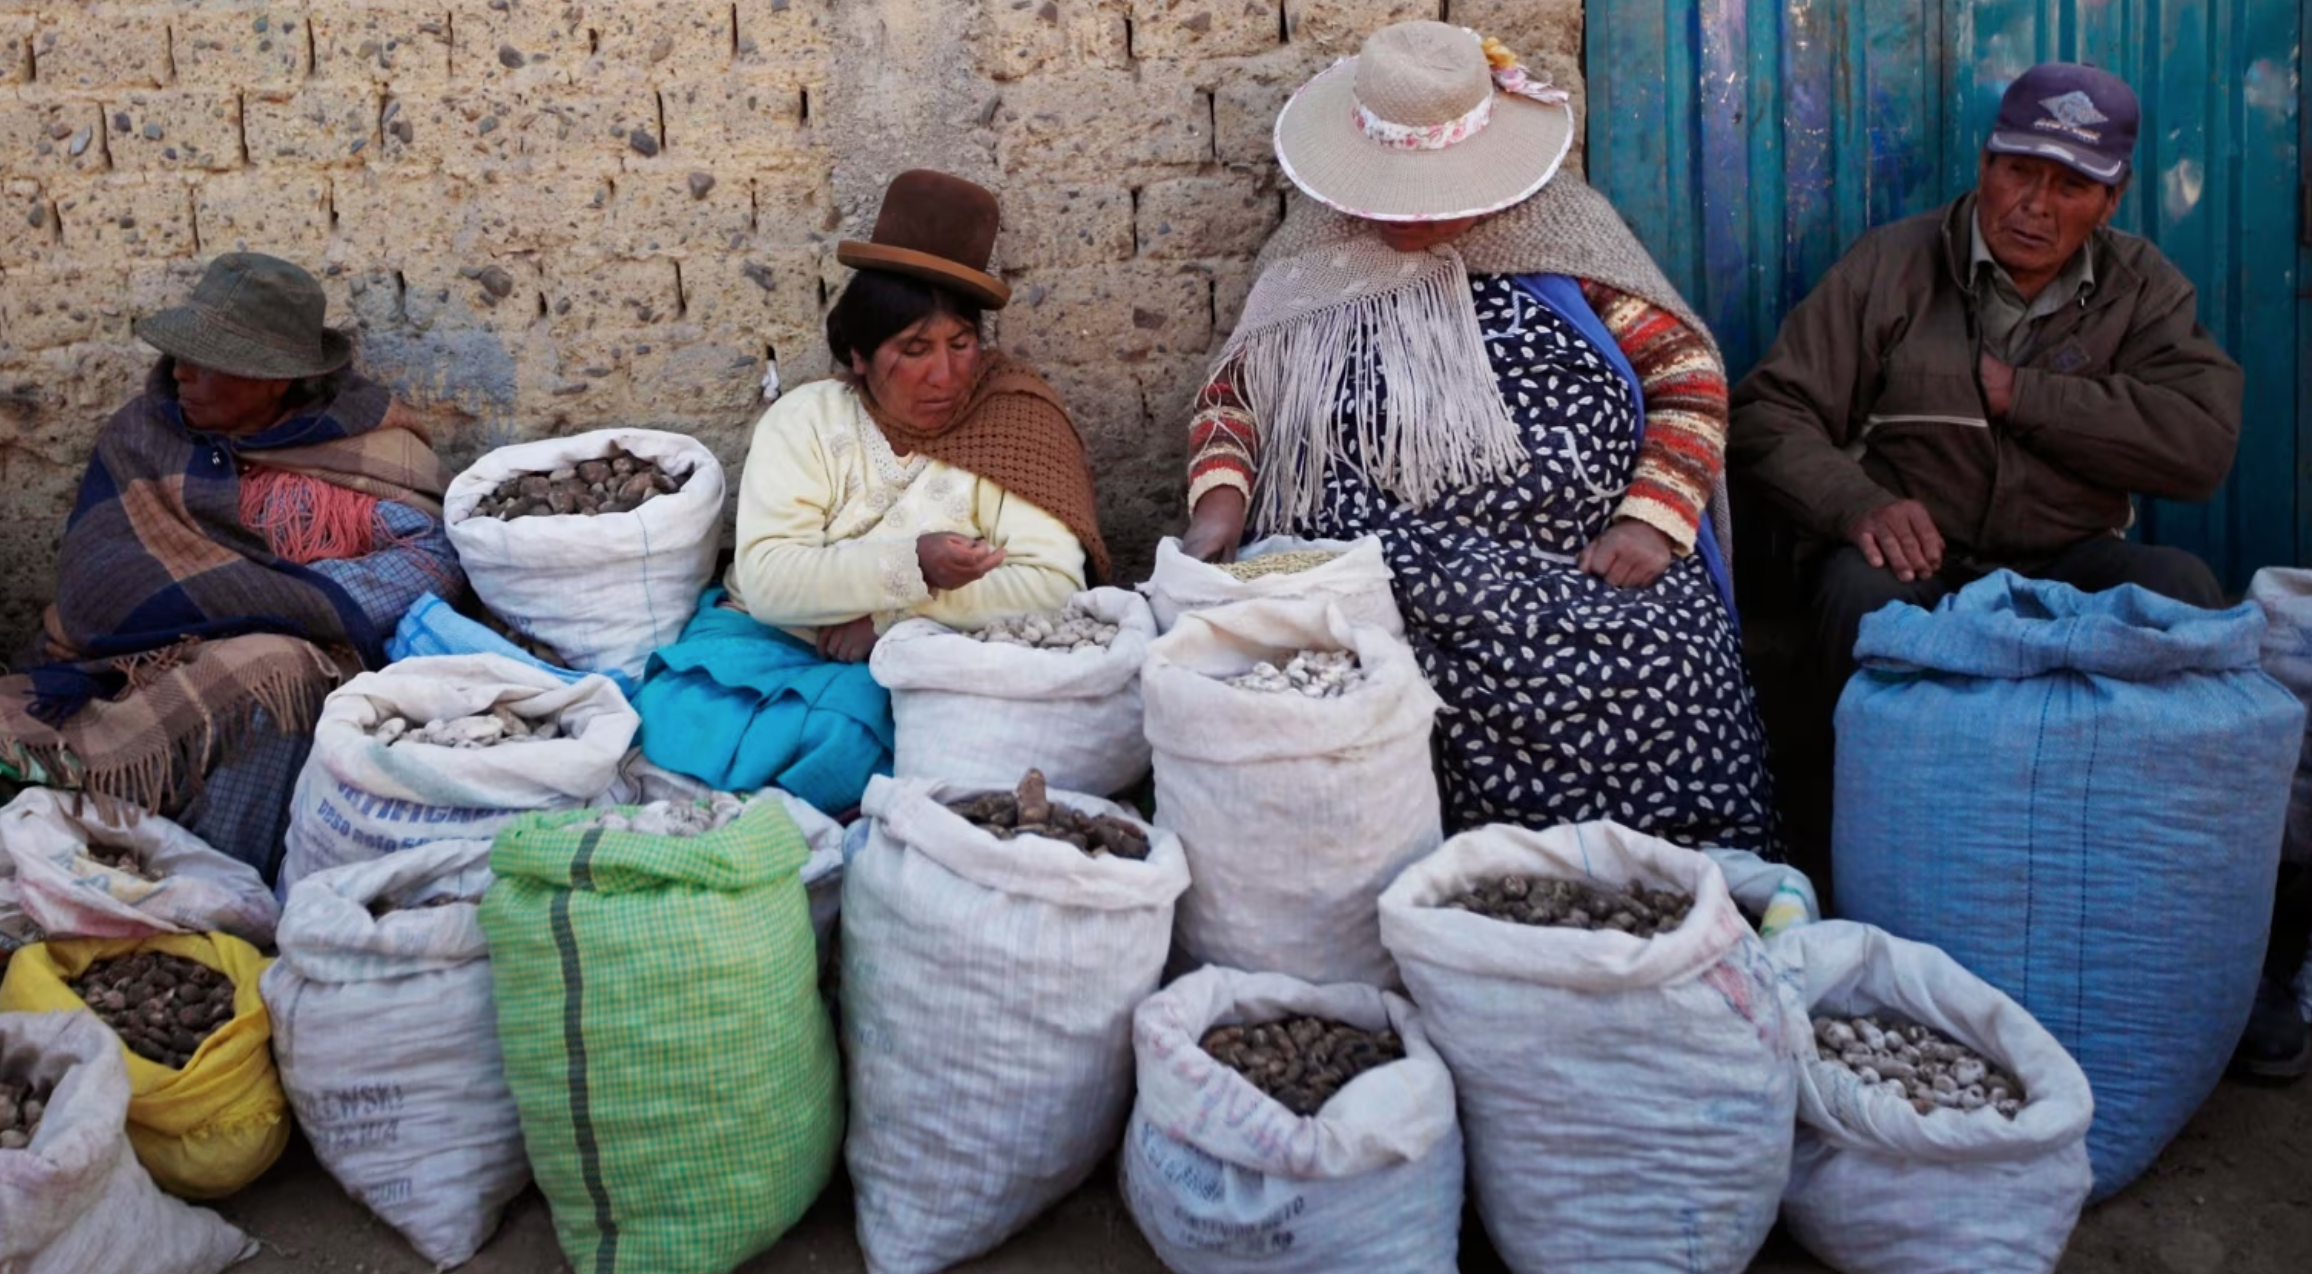 Déclaration de catastrophe en Bolivie alors que le gel détruit les récoltes